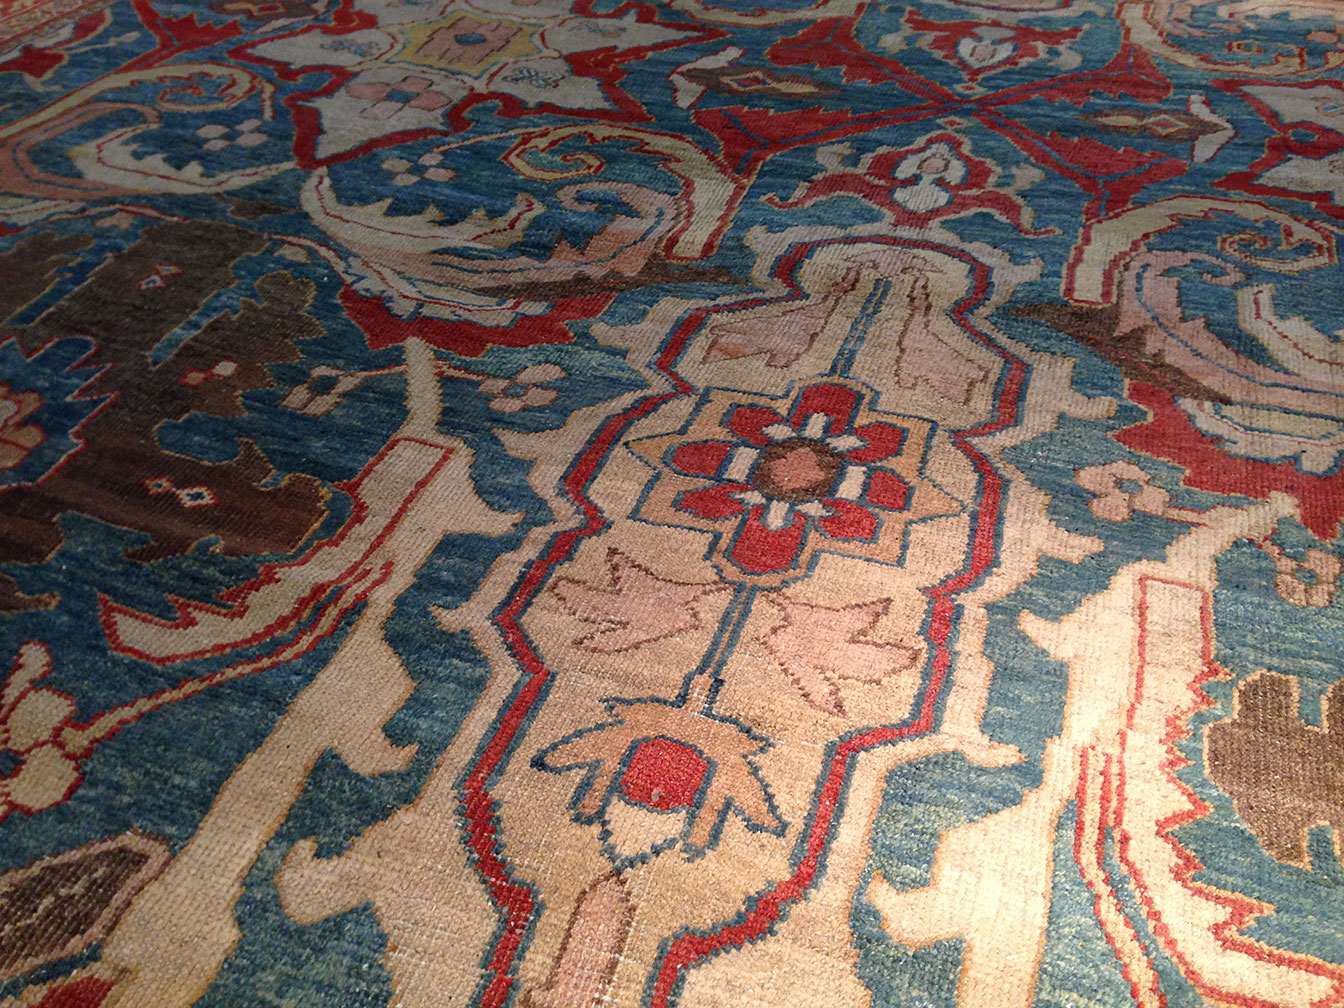 Antique sultan abad Carpet - # 50162